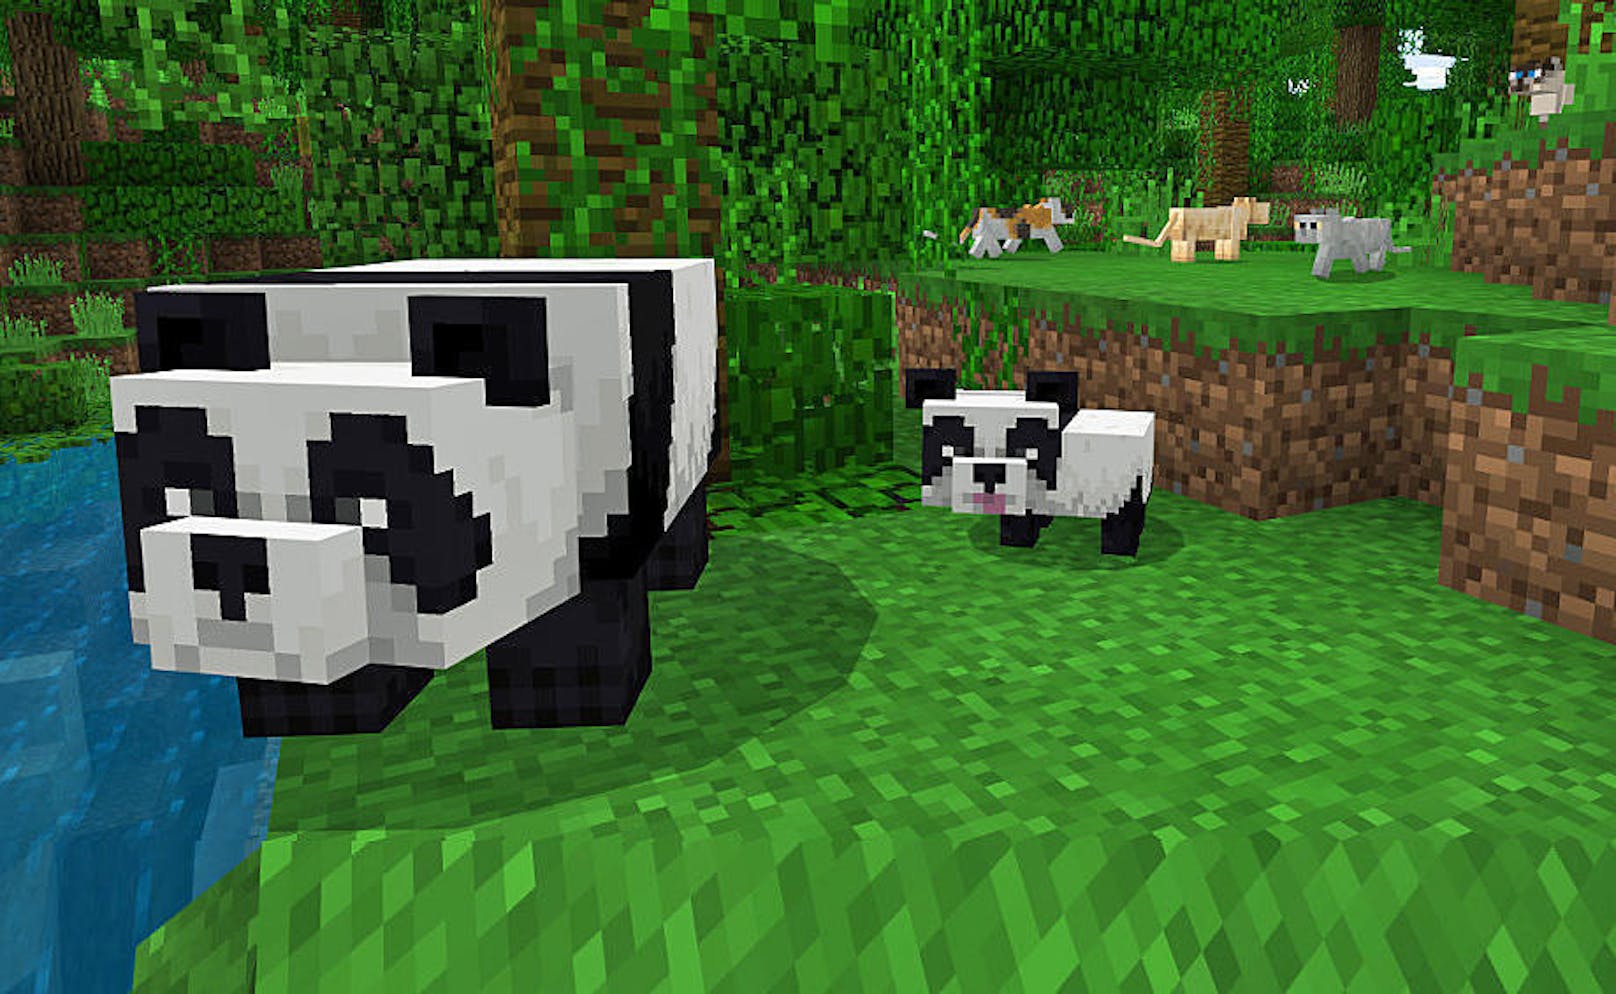 Für Minecraft ist ein Bonus-Update erschienen. Neben Pandas und neu gestalteten Katzen enthält die Aktualisierung auch neues Baumaterial: Bambus. Weiter steht ab sofort die Armbrust mit verschiedenen Verzauberungen zur Verfügung. Das Update ist für Xbox One, Windows 10, PC, iOS, Android und Nintendo Switch verfügbar.